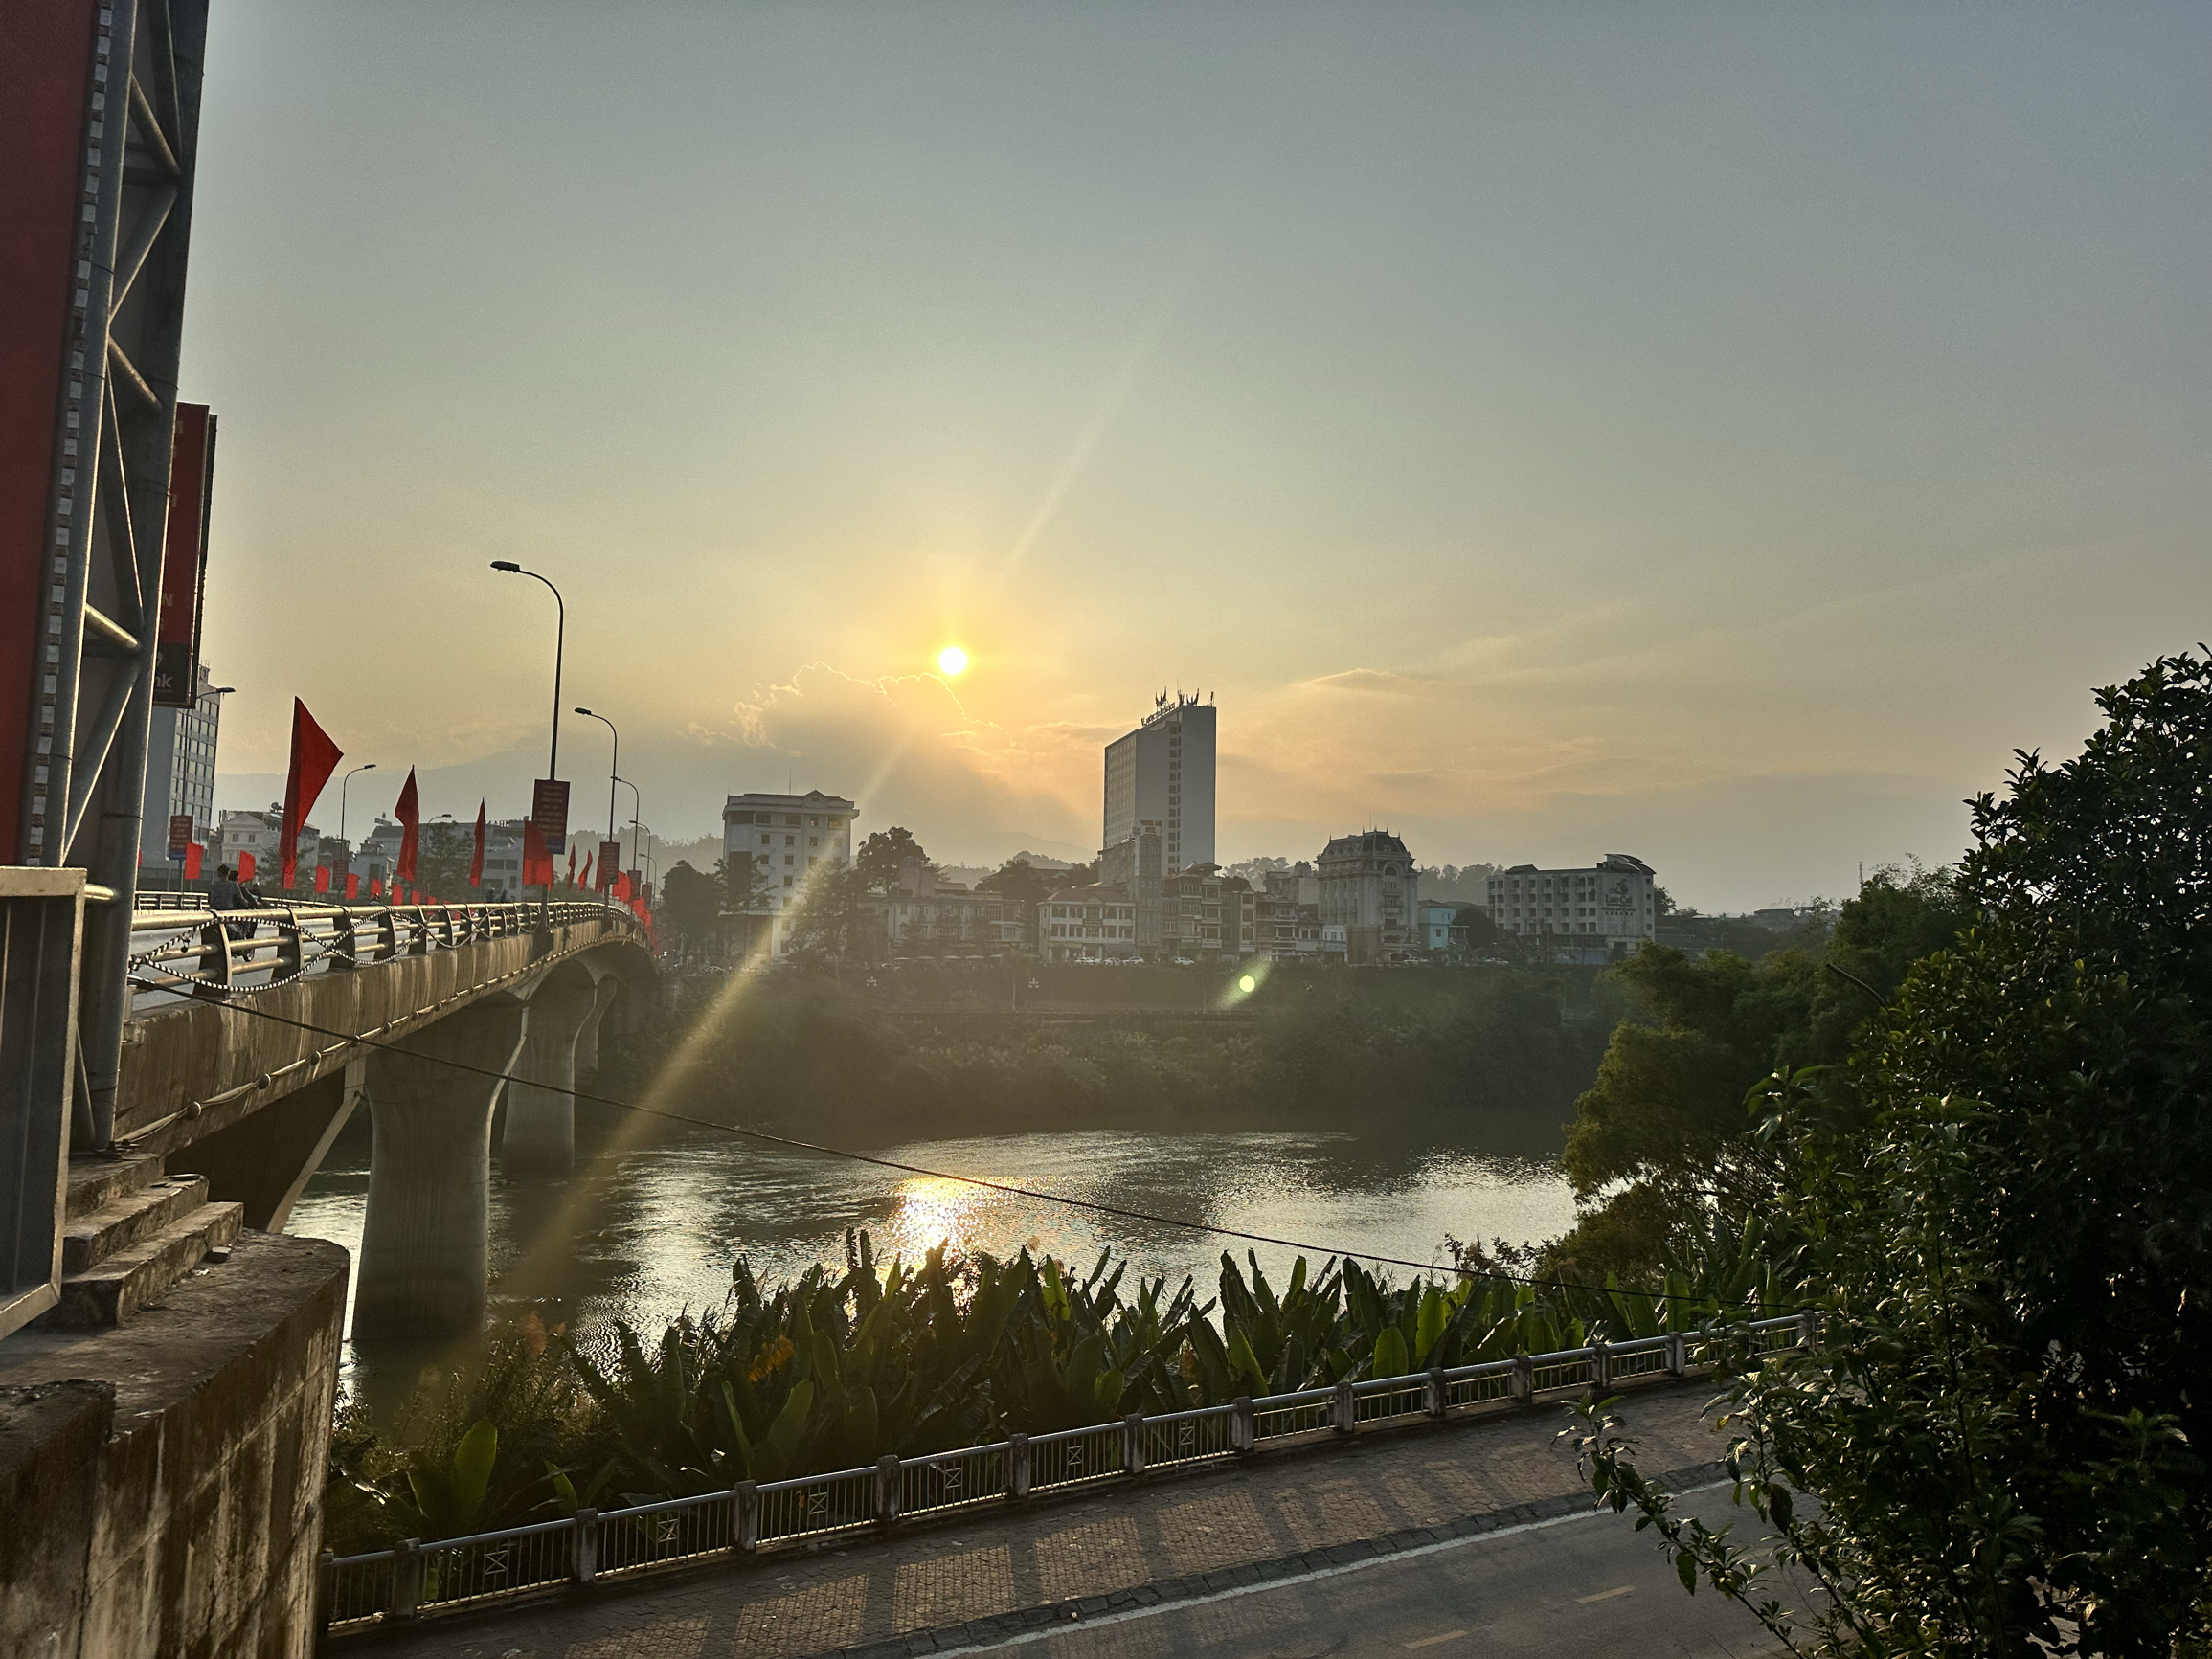 一日两城，在老街遥望两国口岸，感叹风光秀美！ #越南老街口岸红河河边漫步